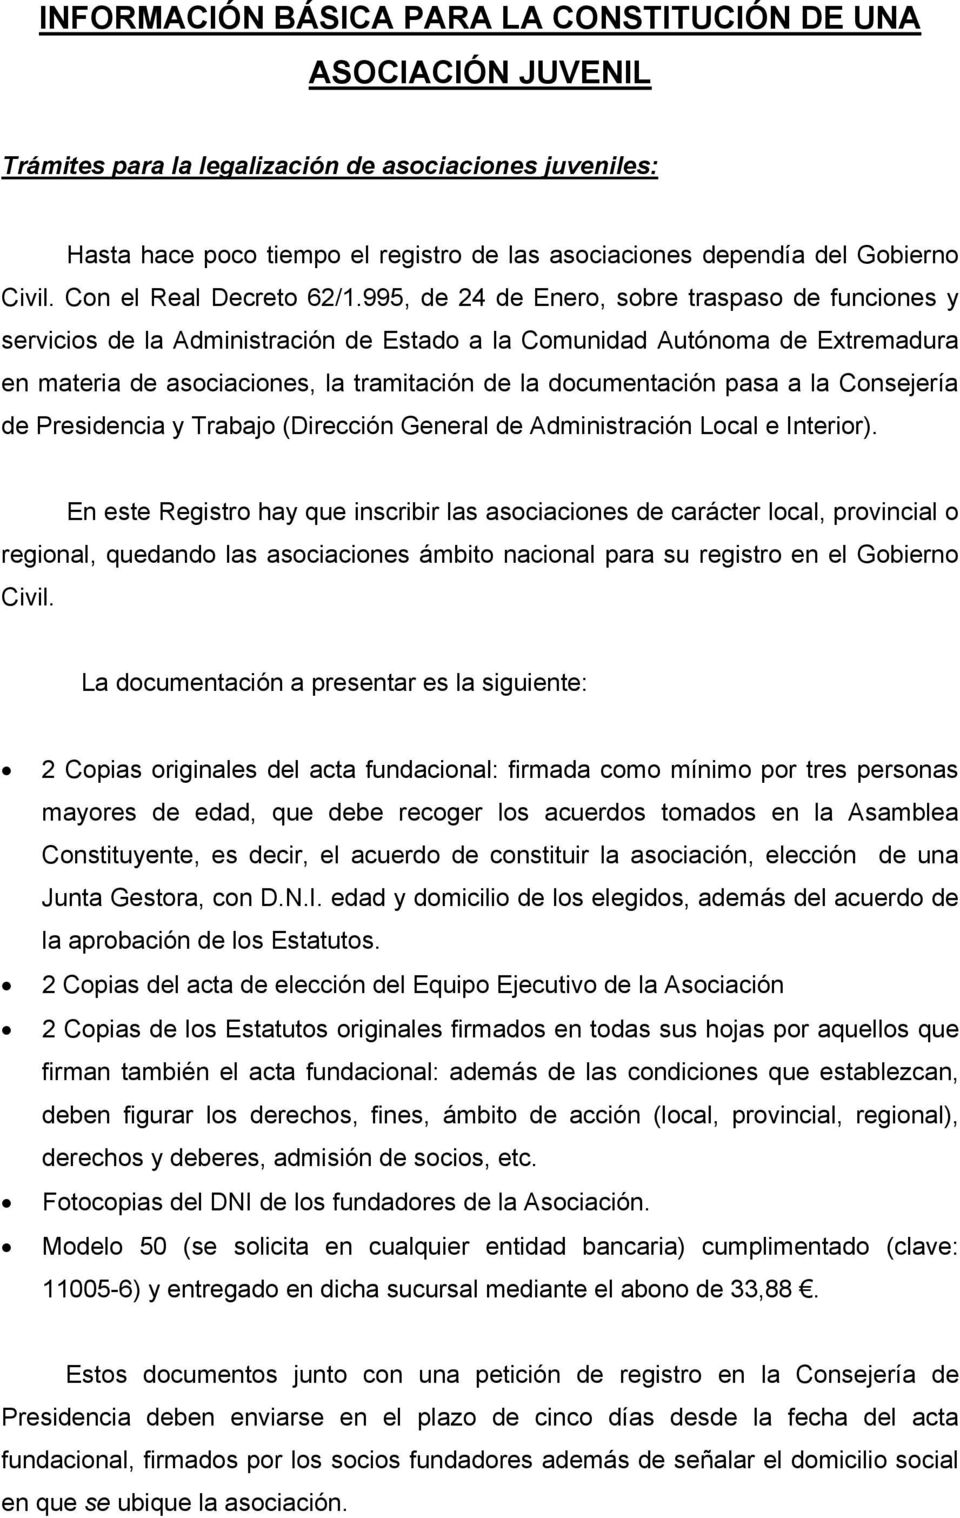 995, de 24 de Enero, sobre traspaso de funciones y servicios de la Administración de Estado a la Comunidad Autónoma de Extremadura en materia de asociaciones, la tramitación de la documentación pasa